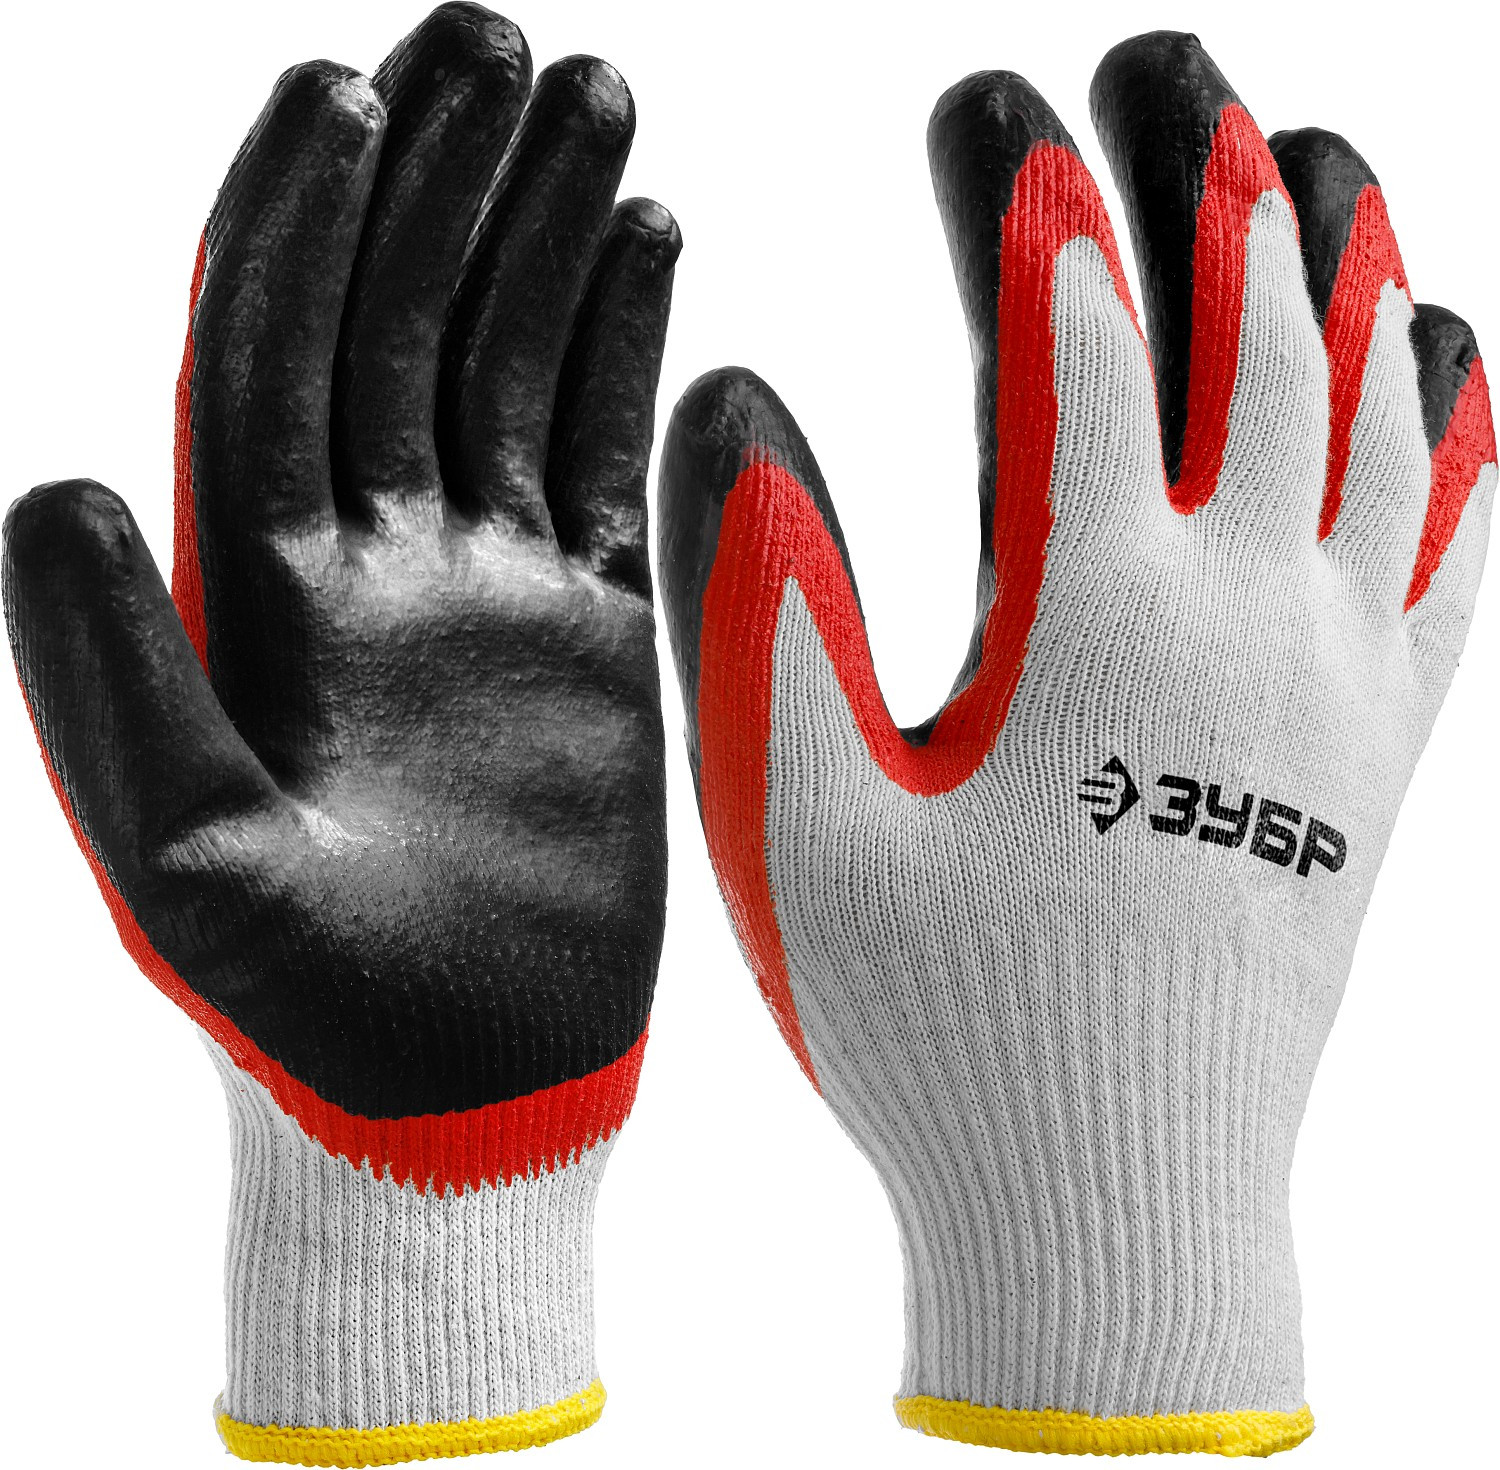 ЗУБР х2 ЗАЩИТА, L-XL, х/б перчатки с двойным латексным обливом, повышенной износостойкости, 13 класс (11459-XL)